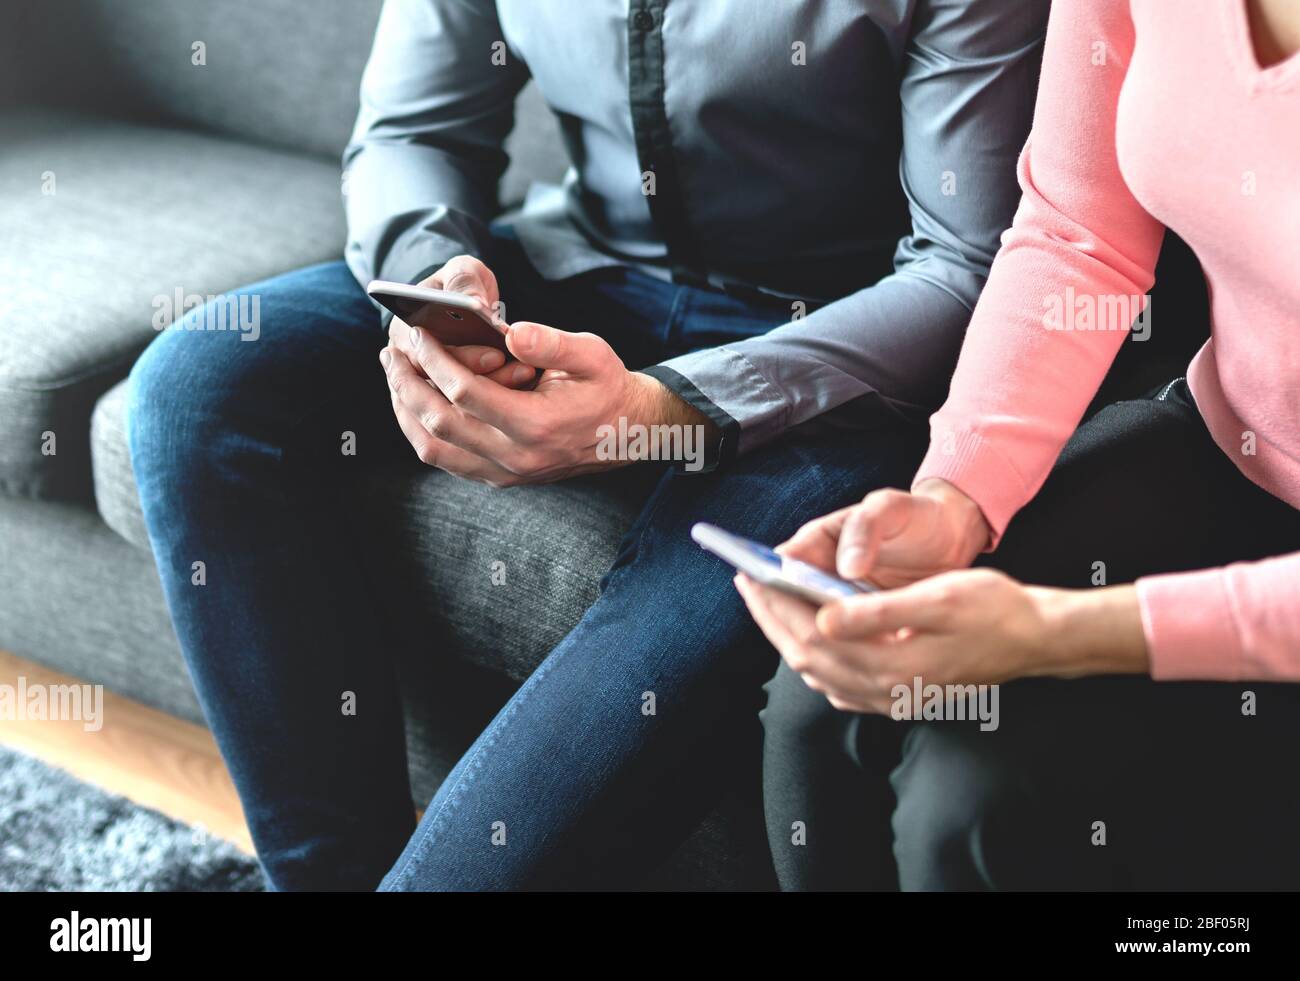 Deux personnes utilisant des téléphones mobiles. Partenaires commerciaux, amis ou couple regardant leurs smartphones. Homme et femme échange de numéros pendant la réunion. Banque D'Images